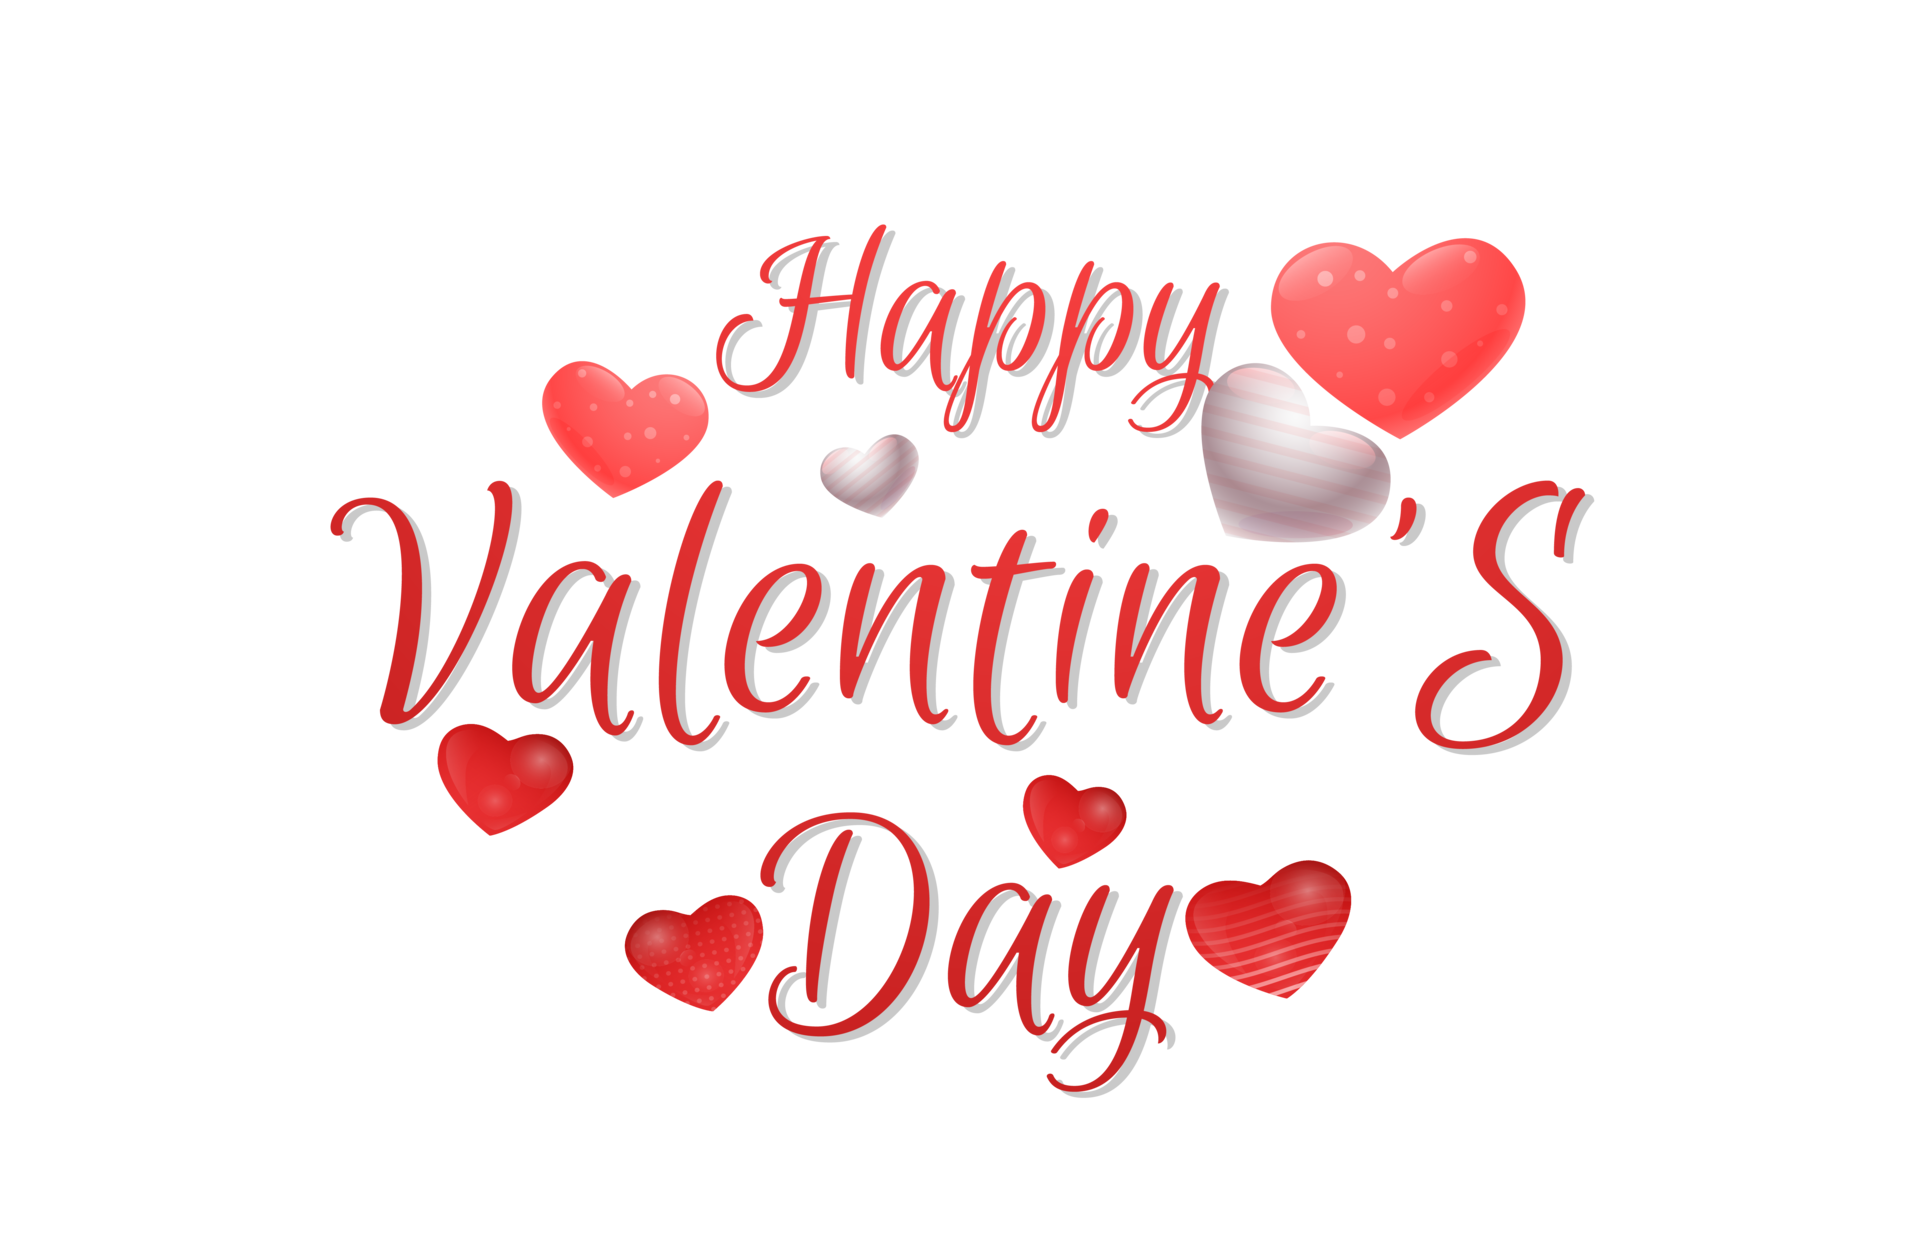 Những chiếc Flying hearts transparent png nhẹ nhàng và nghệ thuật sẽ làm cho ngày Valentine của bạn trở nên lãng mạn hơn bao giờ hết. Hãy tìm kiếm và sử dụng những hình ảnh này để truyền tải tình cảm của mình trong ngày lễ tình nhân này.